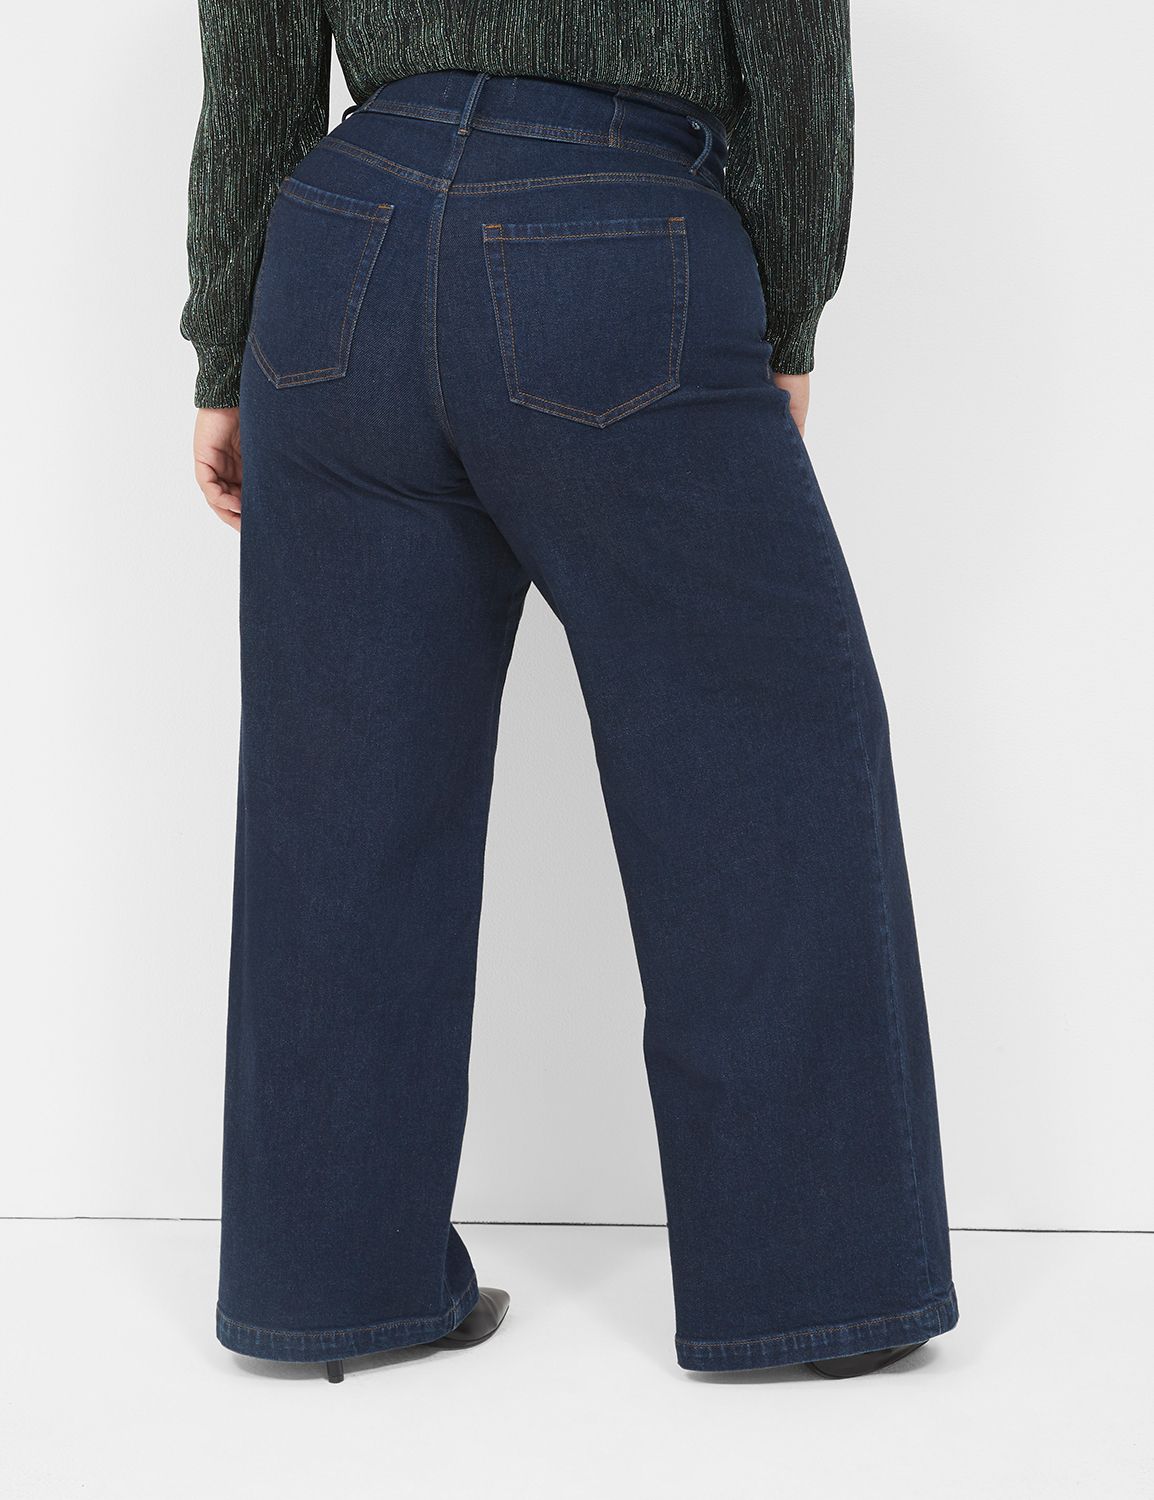 Seven7 Flare Jean - Embellished Legs & Pockets